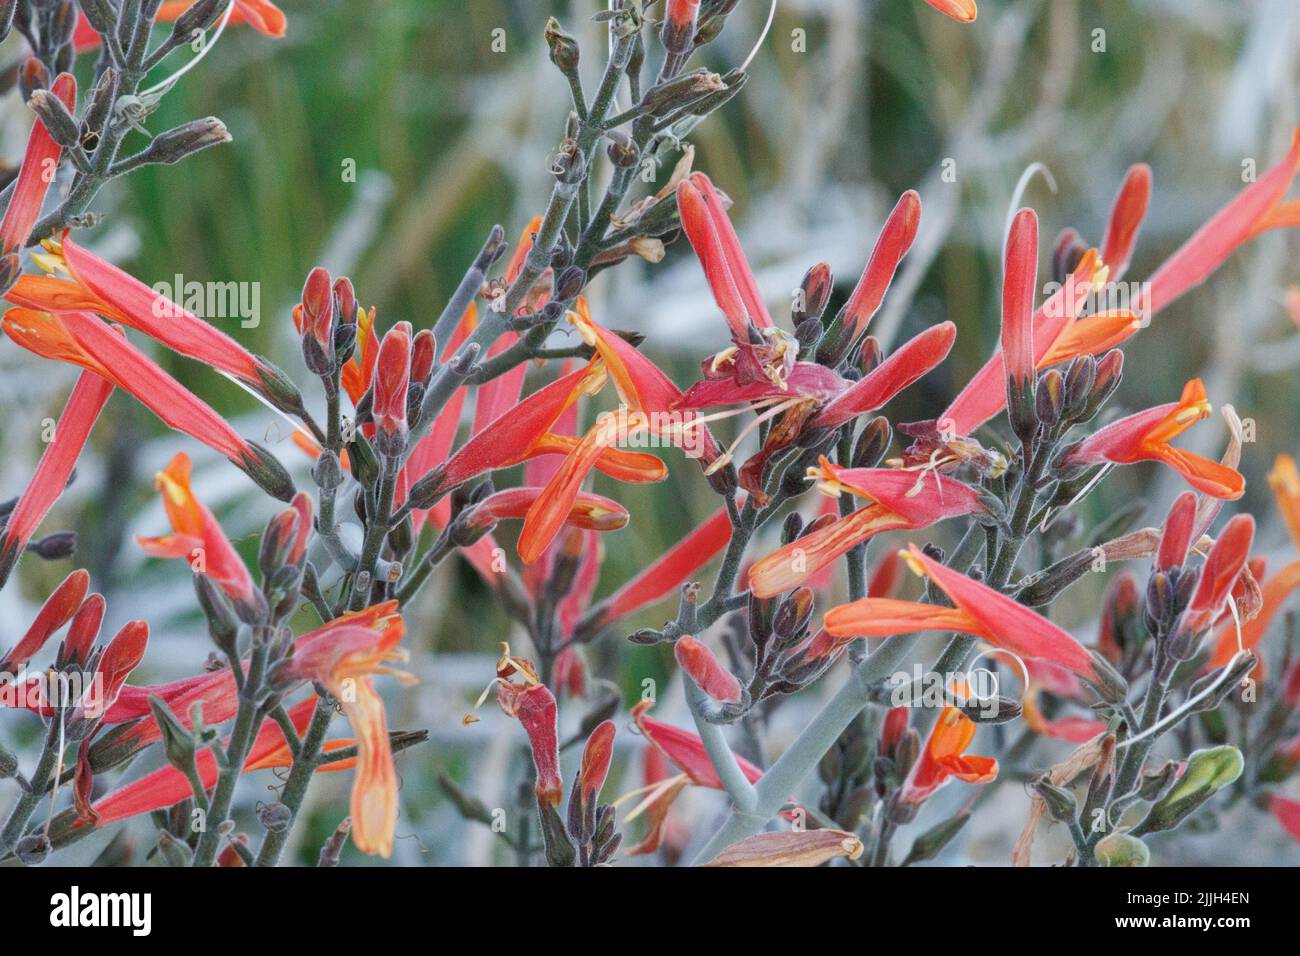 Rot blühende dichasiate Thyrse-Blütenstände von Justicia calfornica, Acanthaceae, einheimischer Strauch in der nordwestlichen Sonoran-Wüste, Frühling. Stockfoto